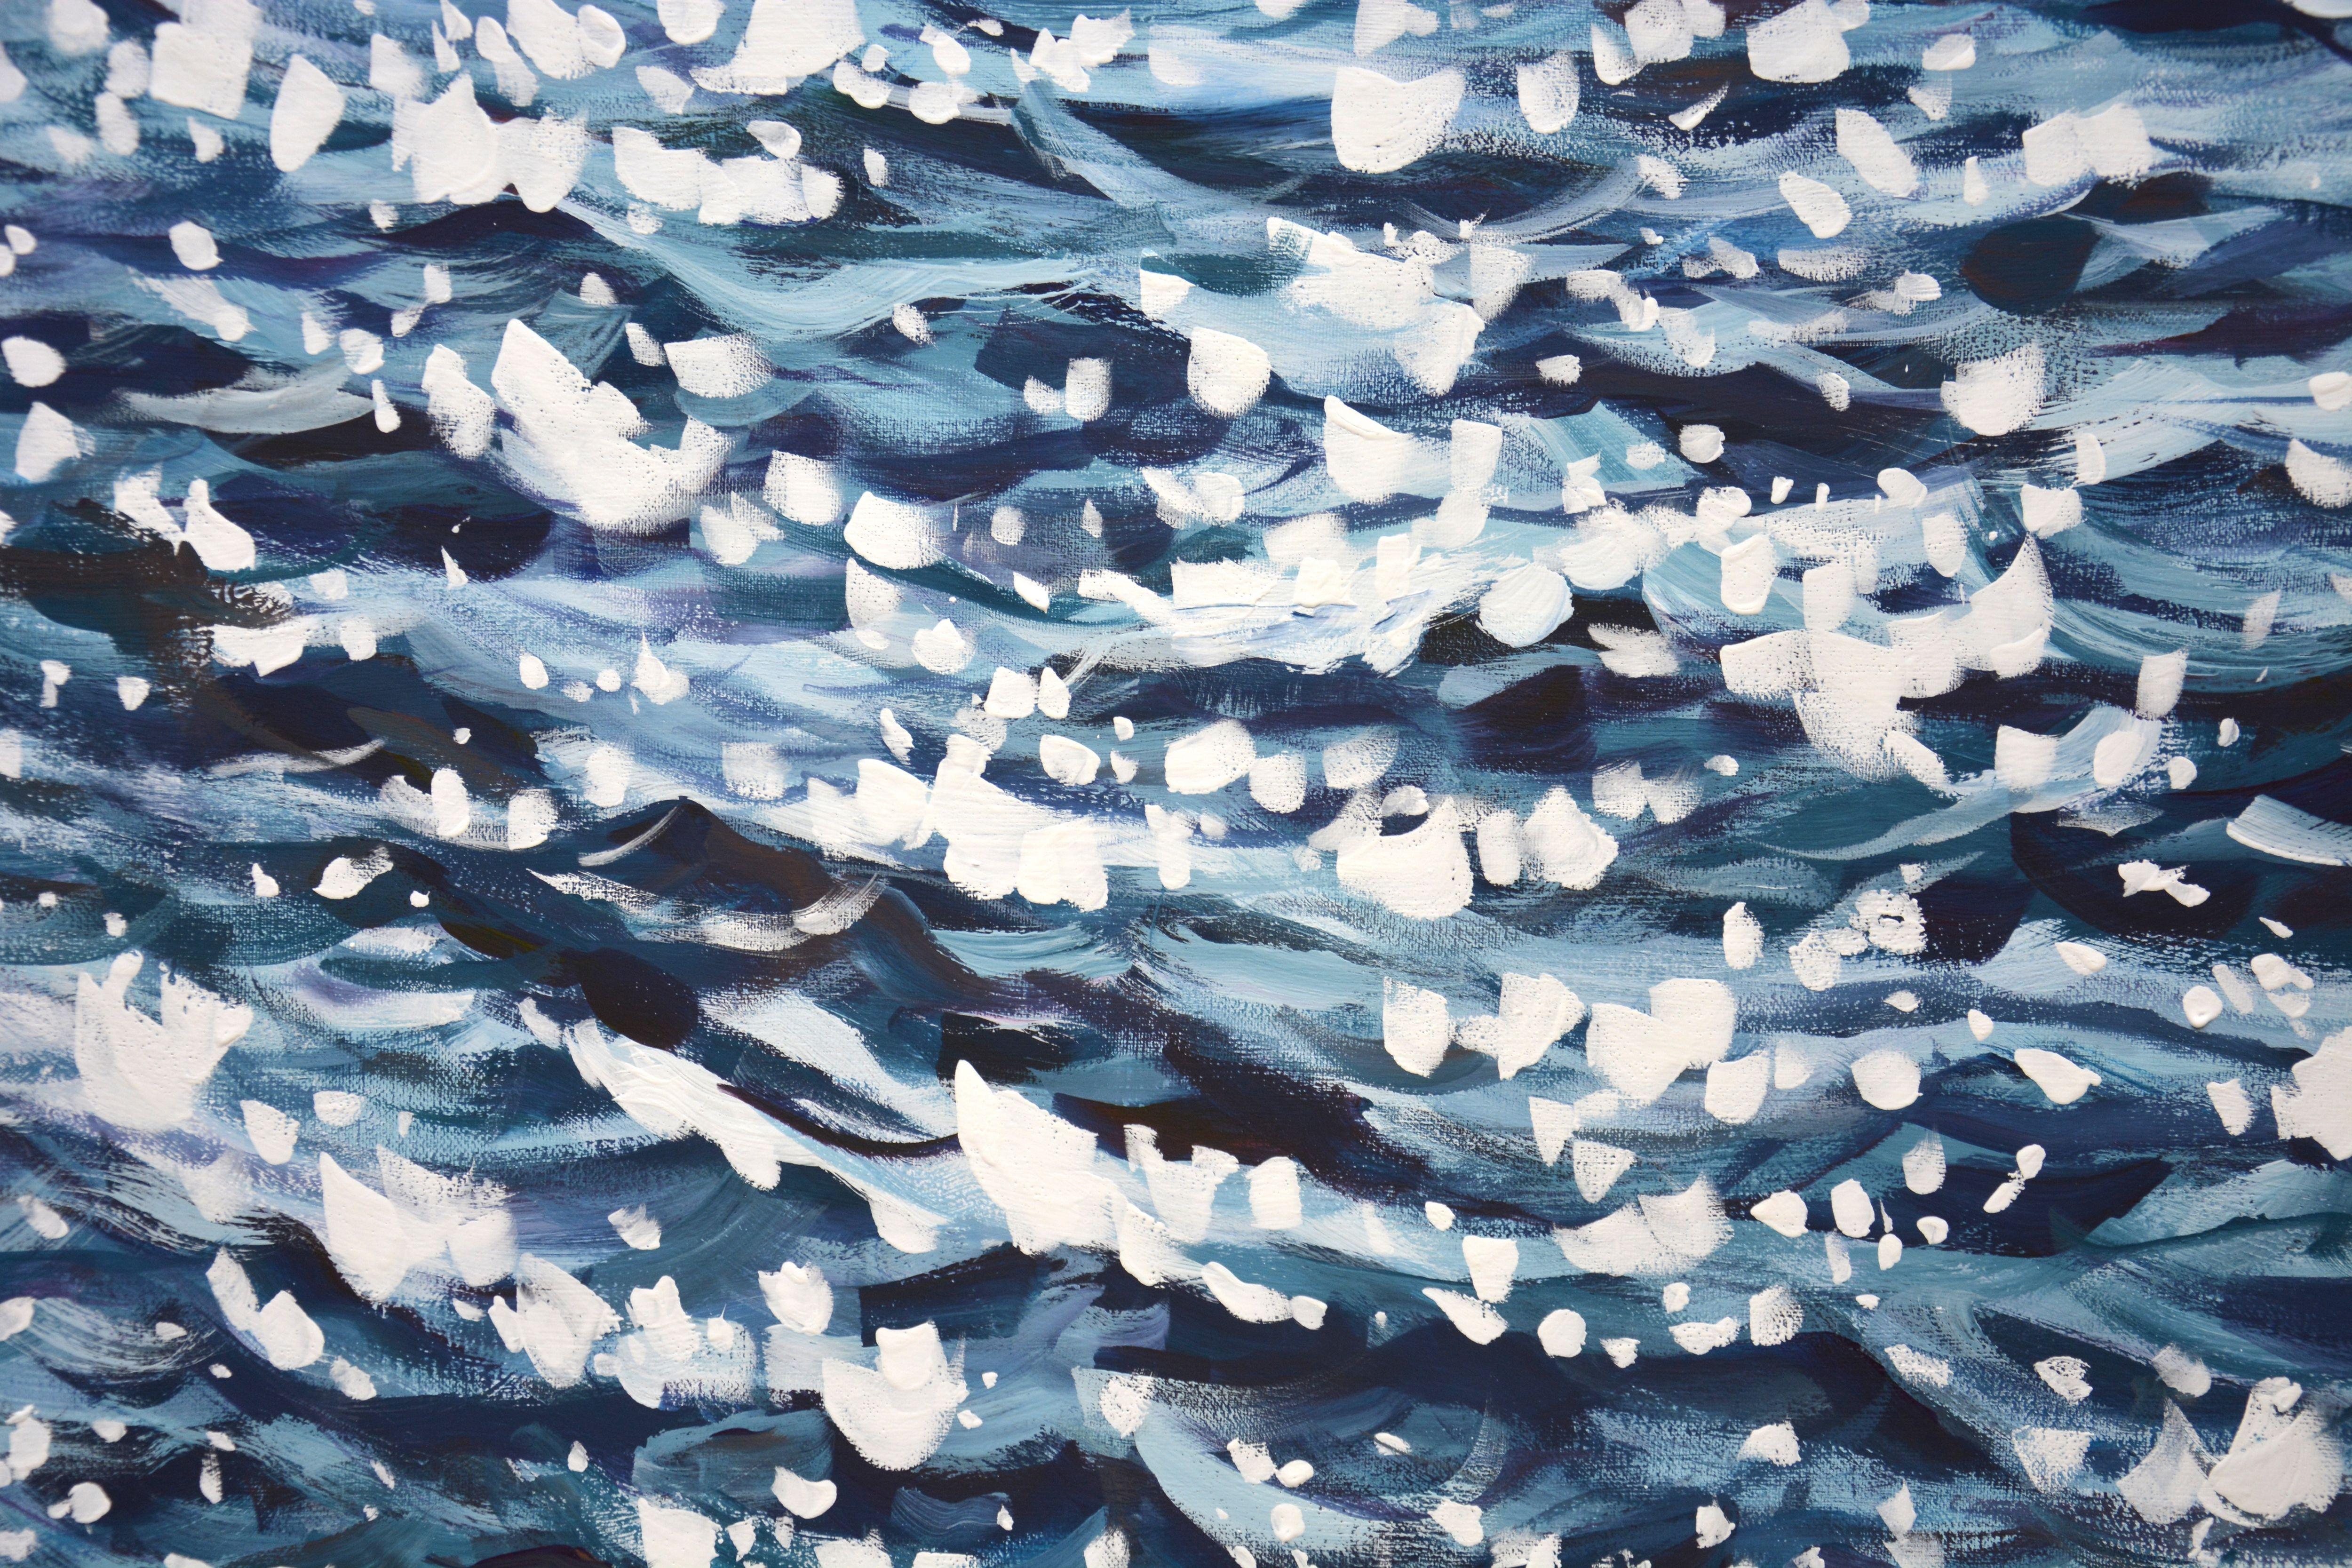 Ocean magic, Painting, Acrylic on Canvas 2